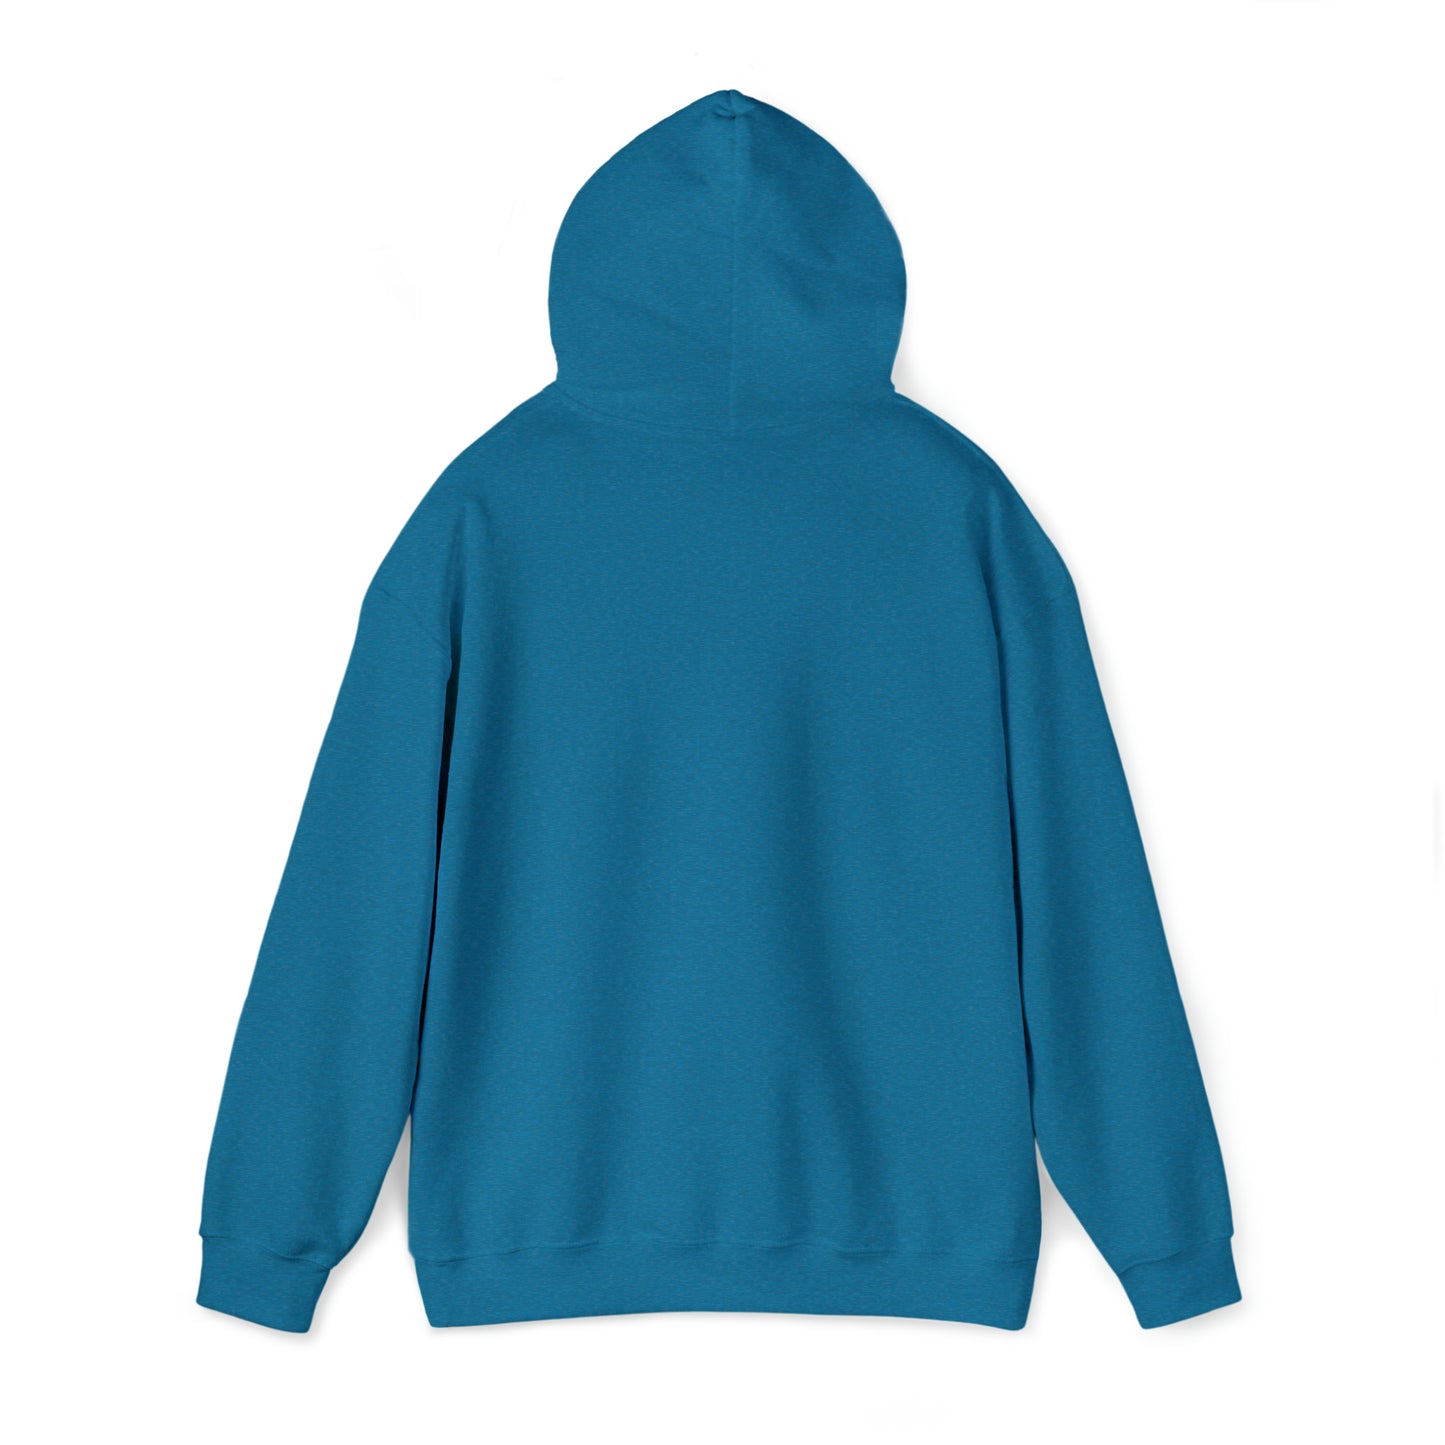 P31 Women's Unisex Heavy Blend™ Hooded Sweatshirt